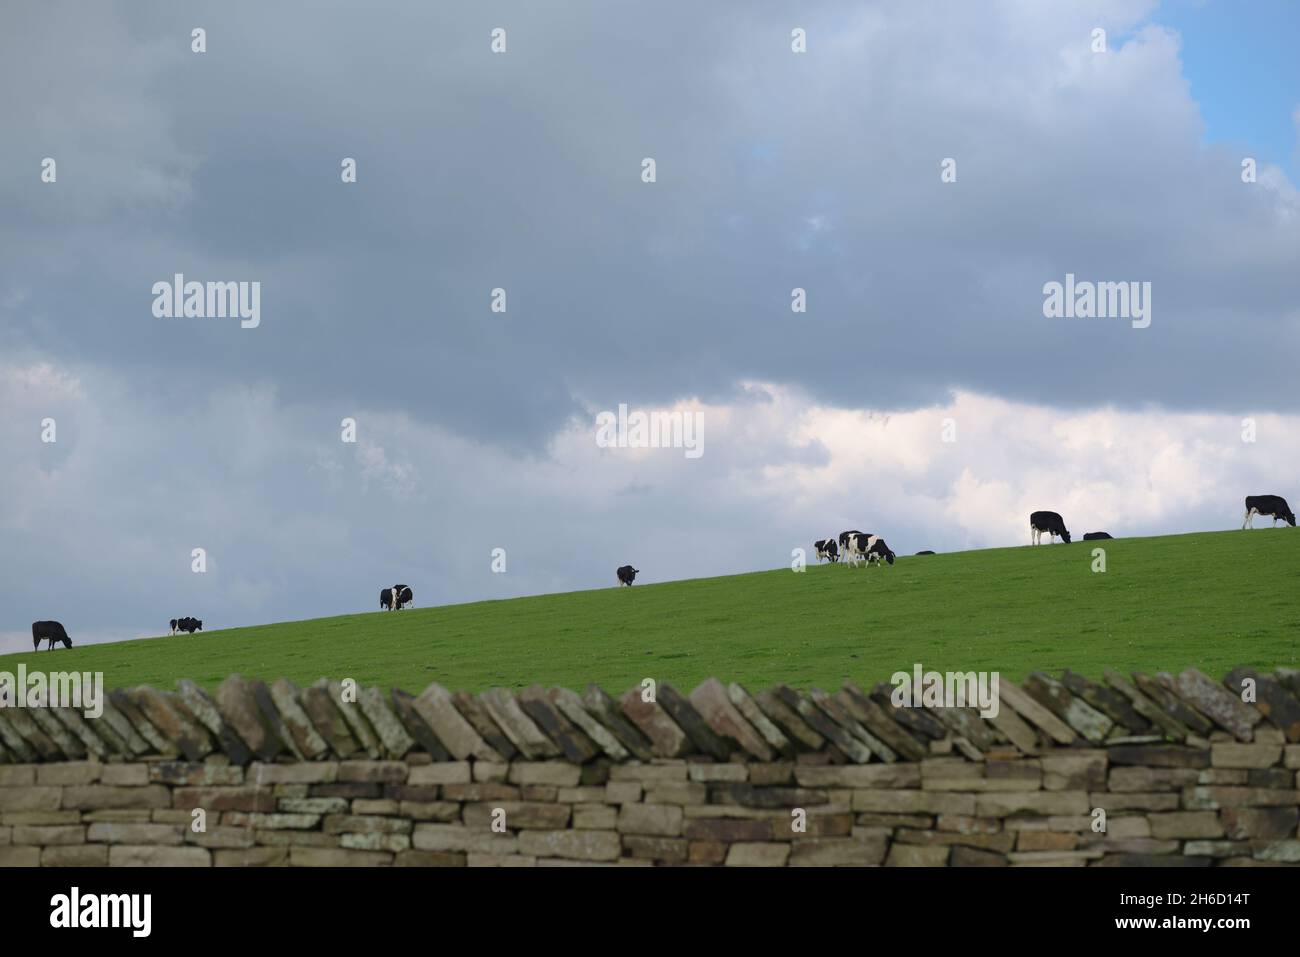 Scène agricole rurale de vaches noires et blanches paissant le long de l'horizon d'une colline herbeuse.Mur en pierre sèche au premier plan et beaucoup d'espace de copie. Banque D'Images